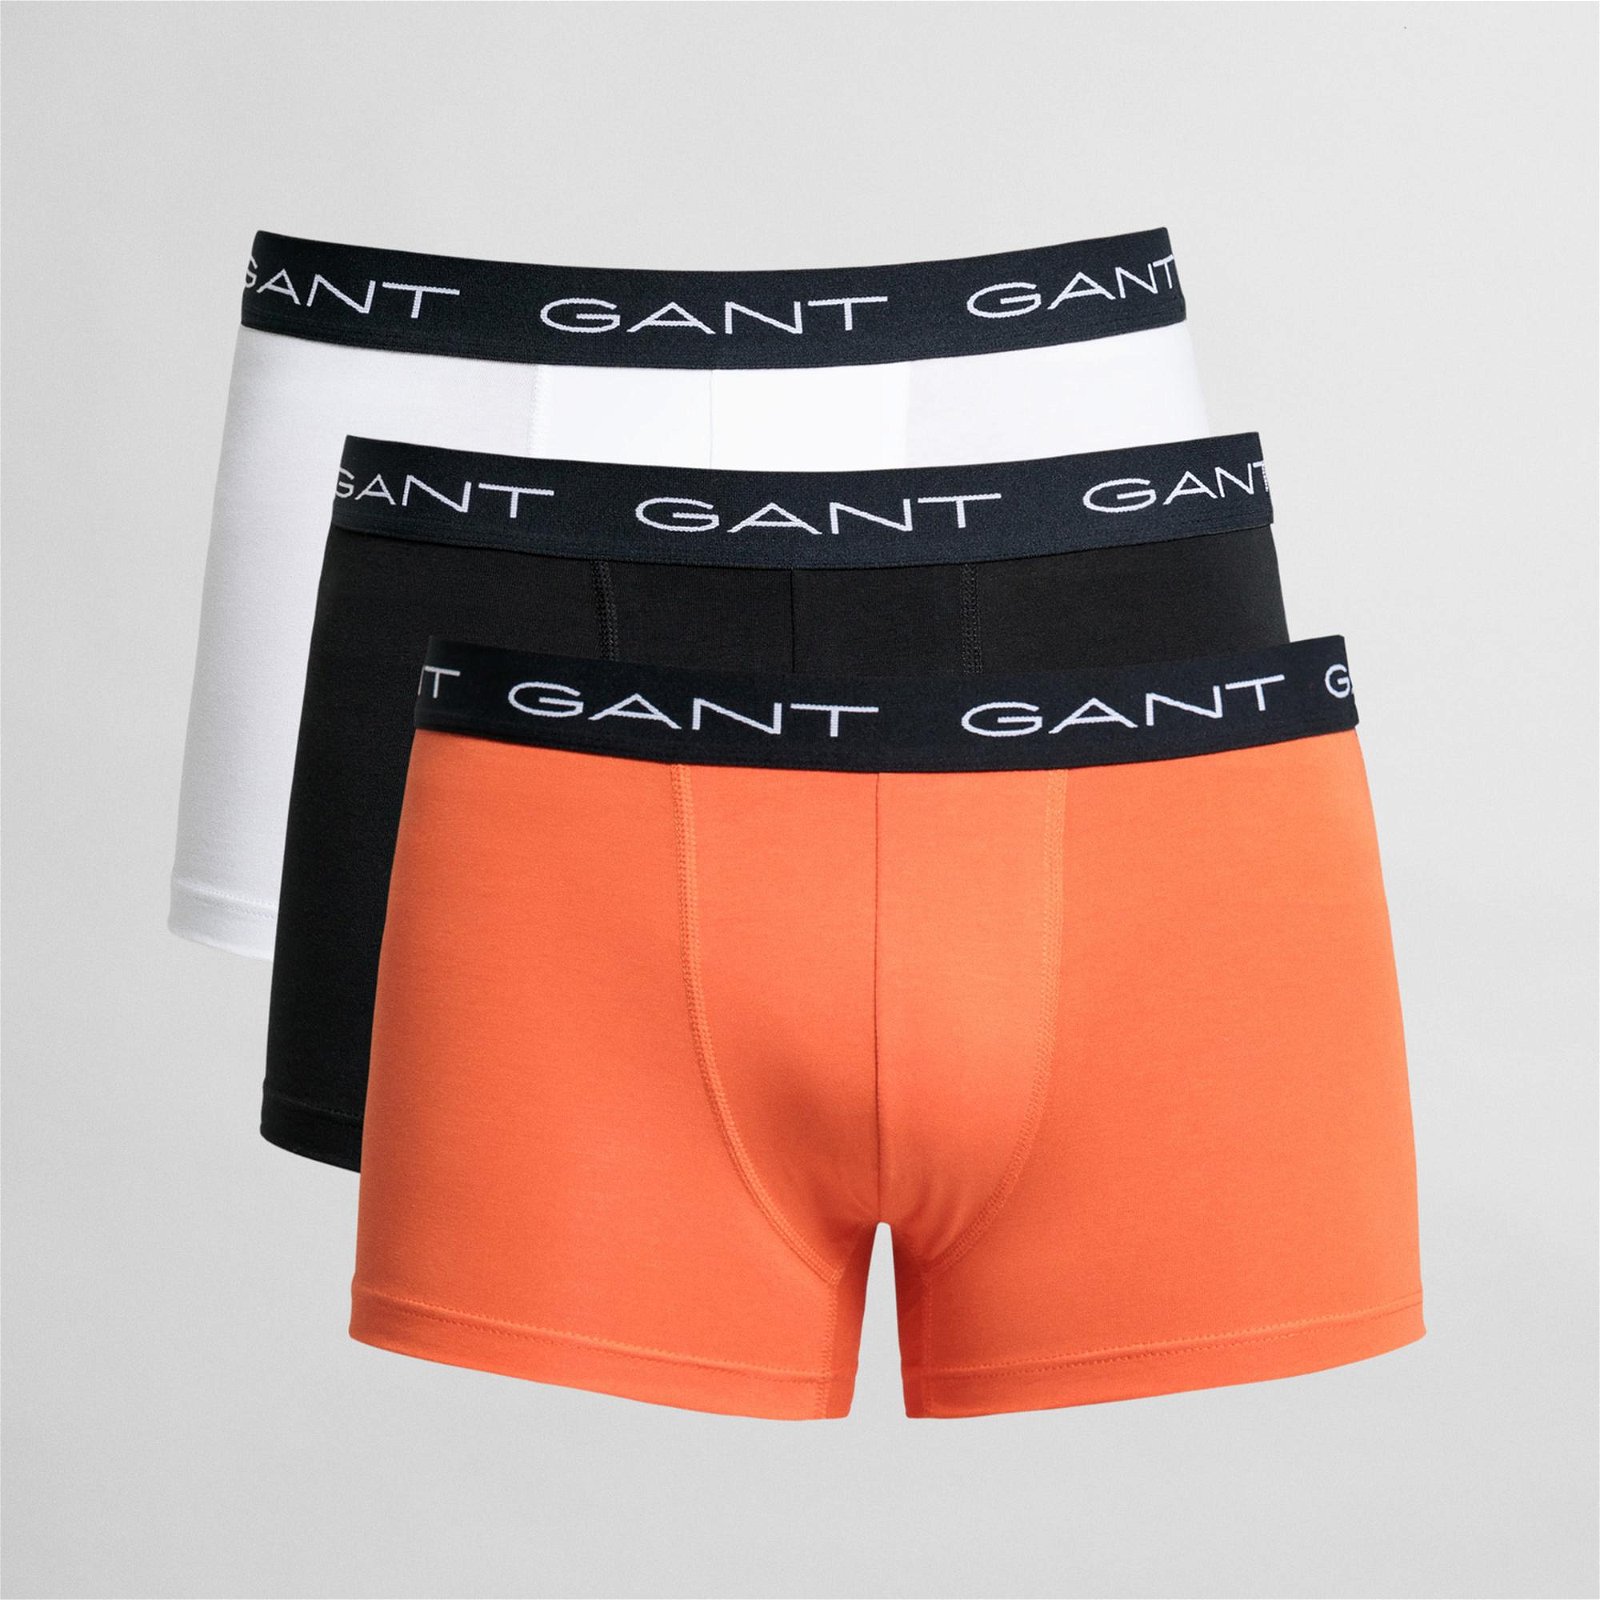 Gant Erkek Turuncu/Siyah/Beyaz 3'lü Boxer